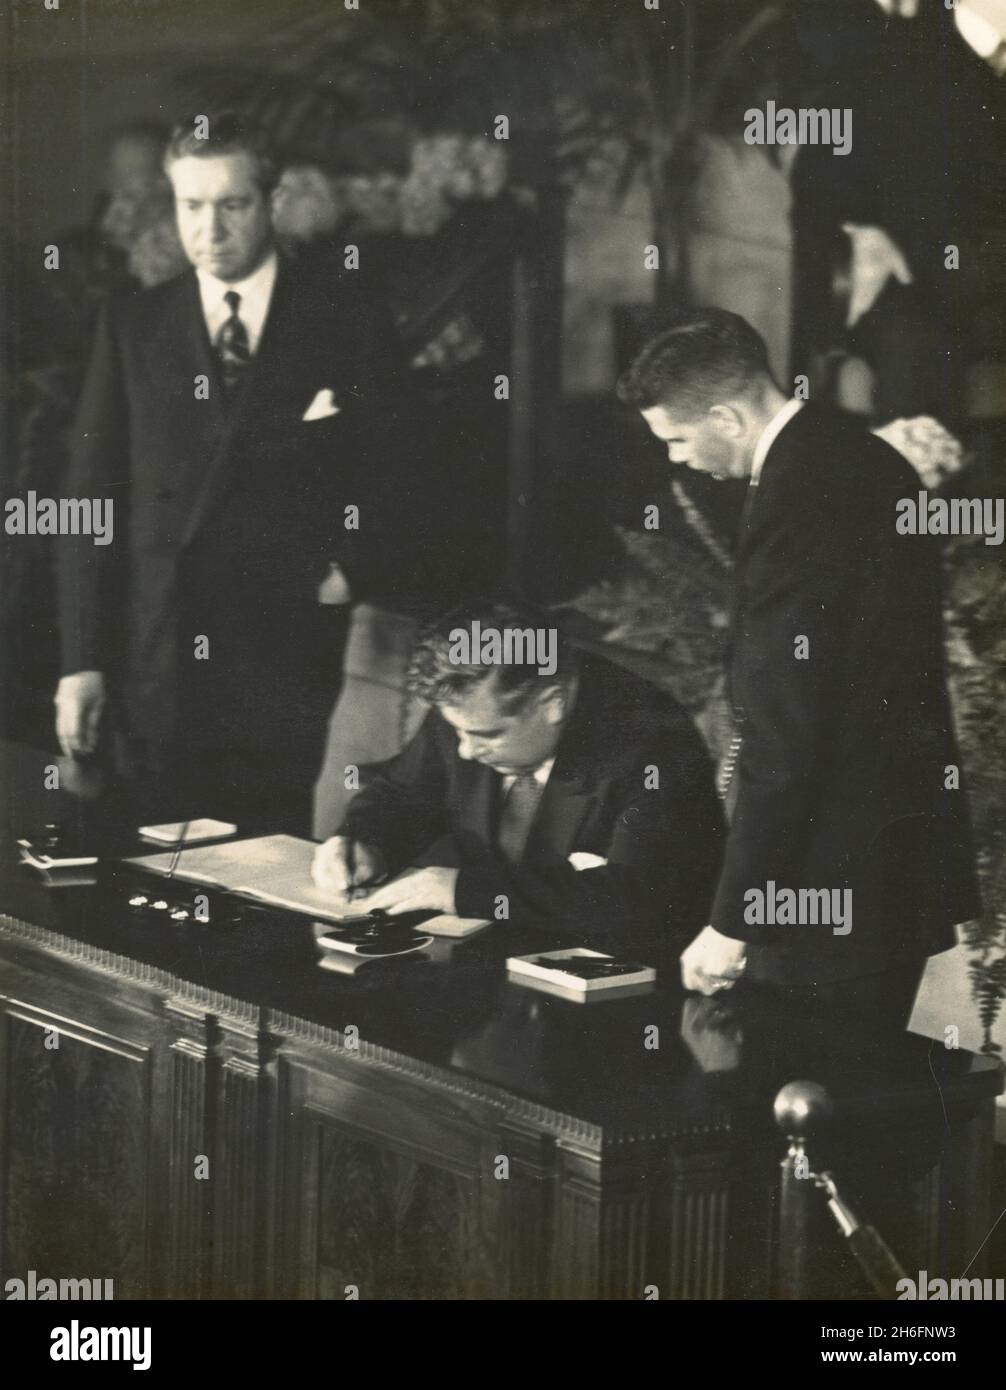 Bjarni Benediktsson, Ministro degli Affari Esteri islandese che firma il Trattato Nord Atlantico all'Auditorium dipartimentale di Washington, DC, USA 1949 Foto Stock